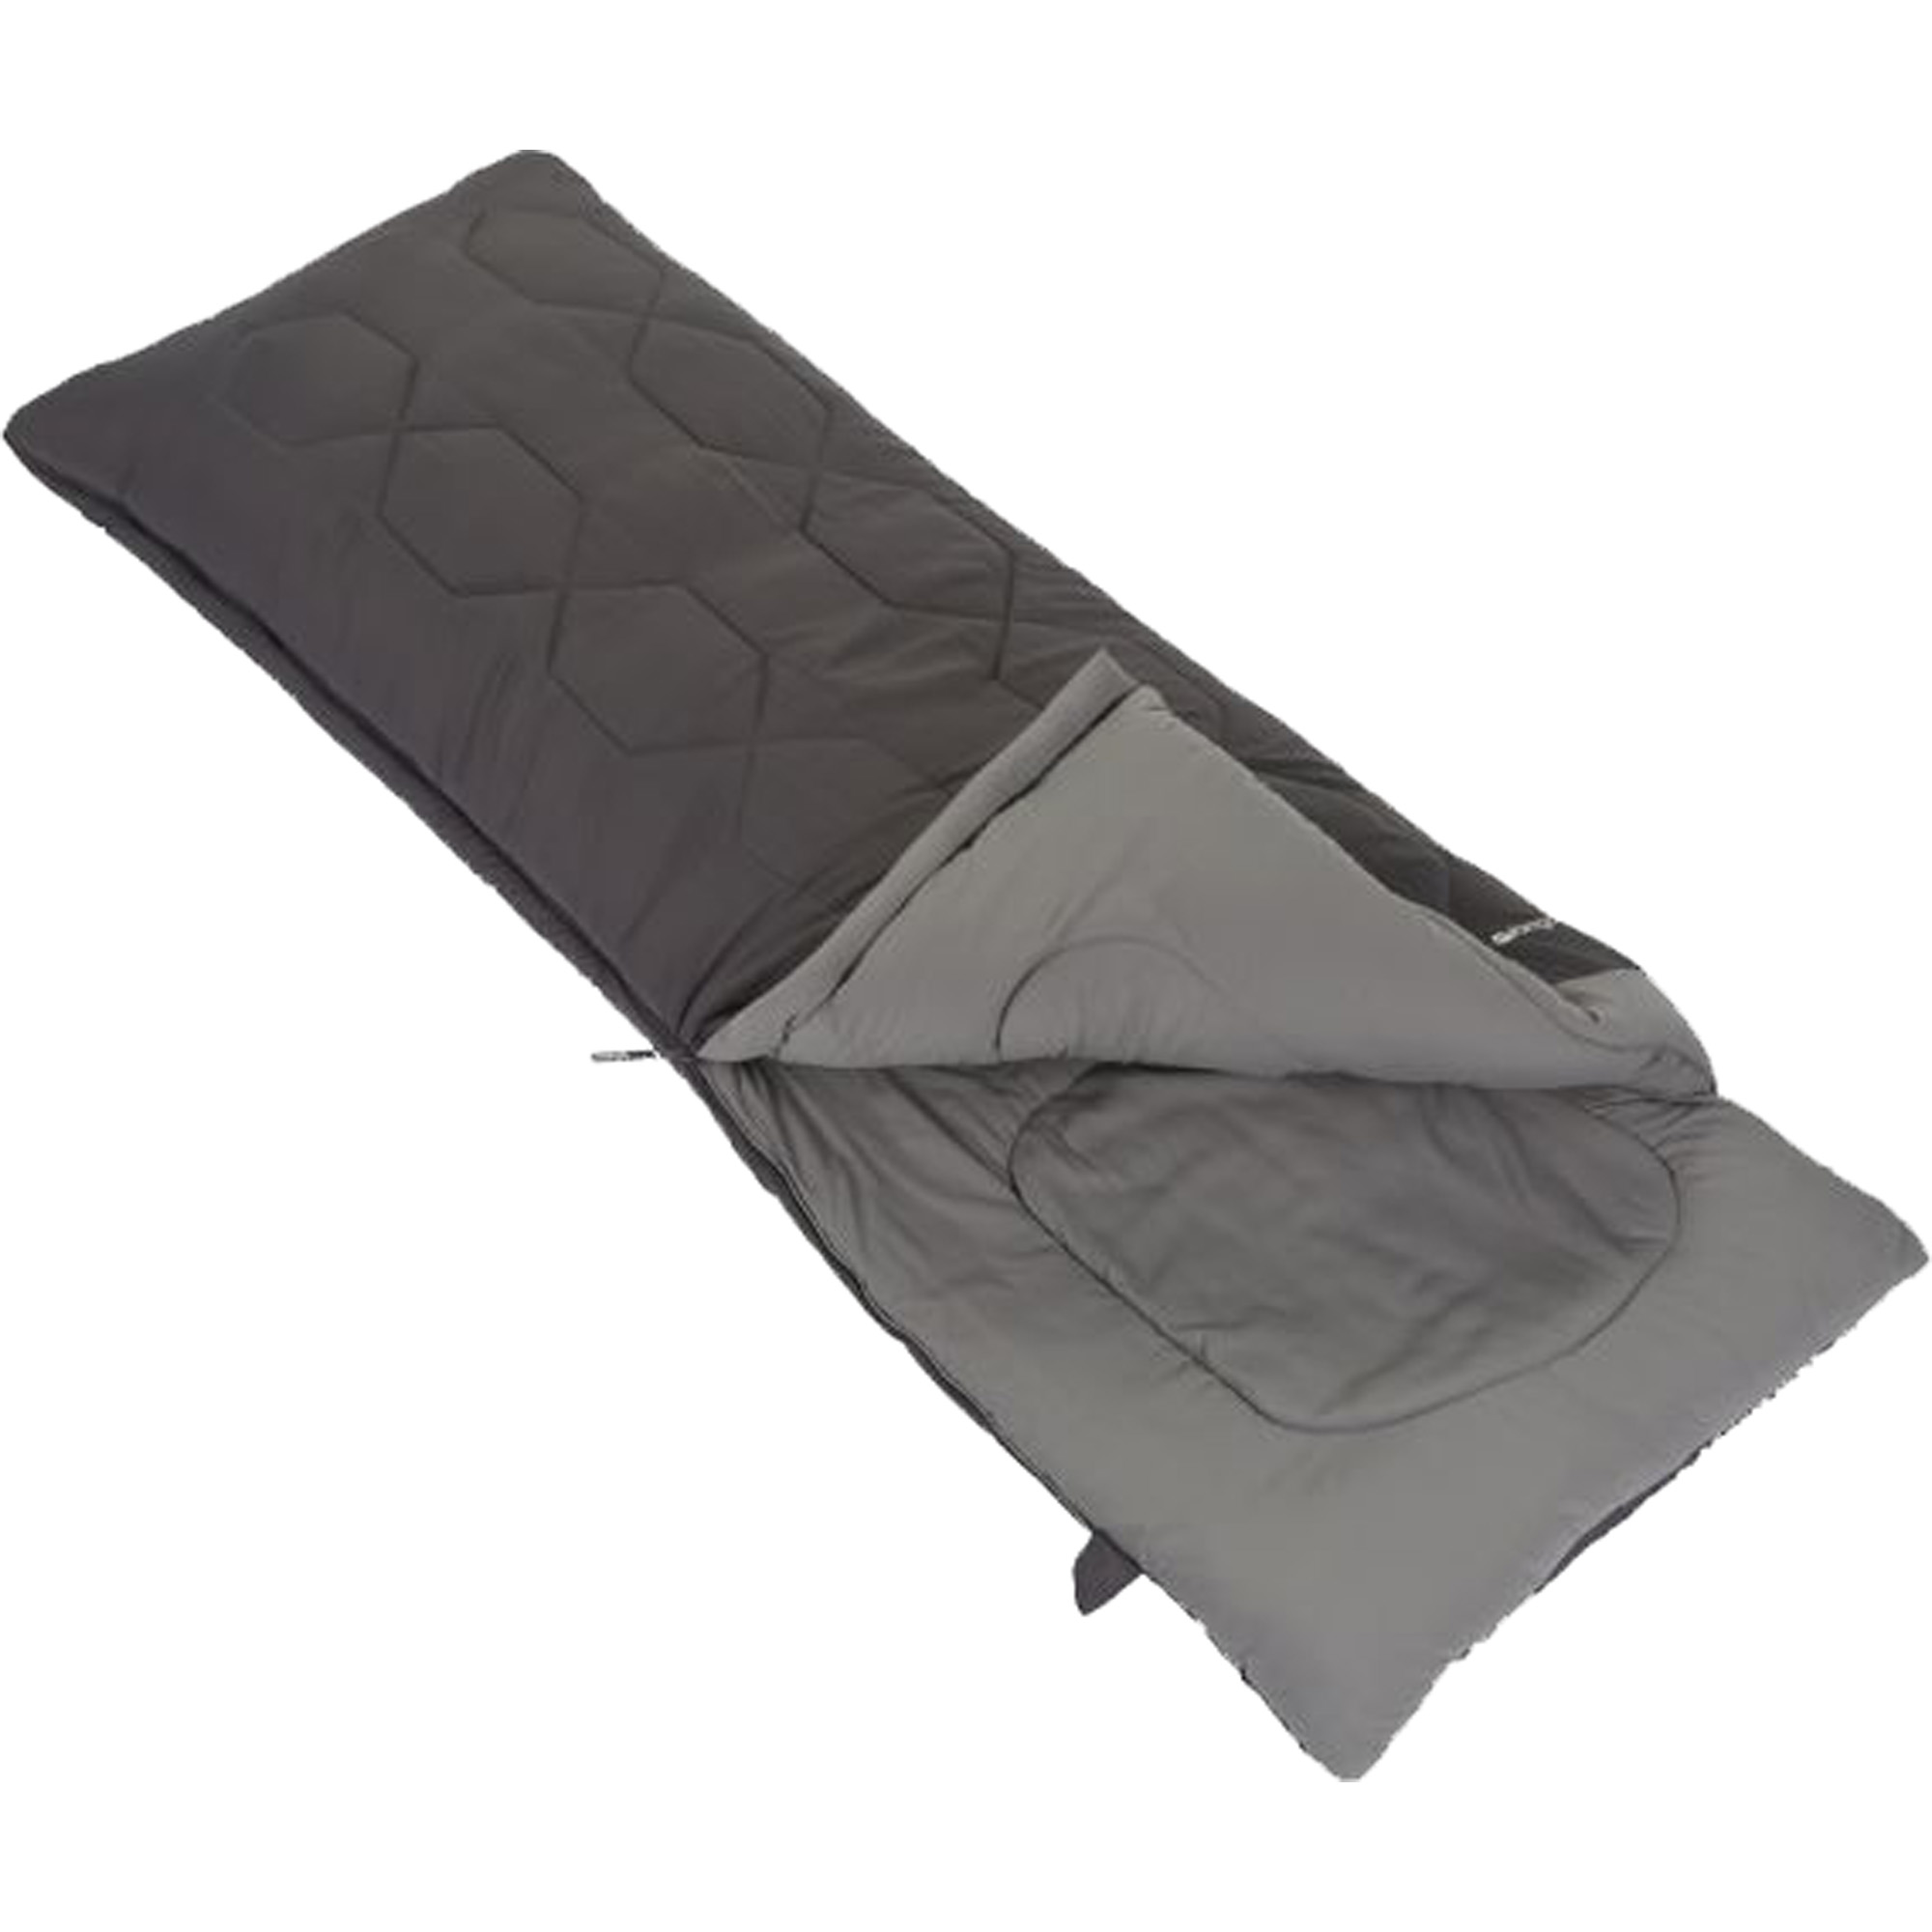 Vango Serenity Superwarm Camping Sleeping Bag